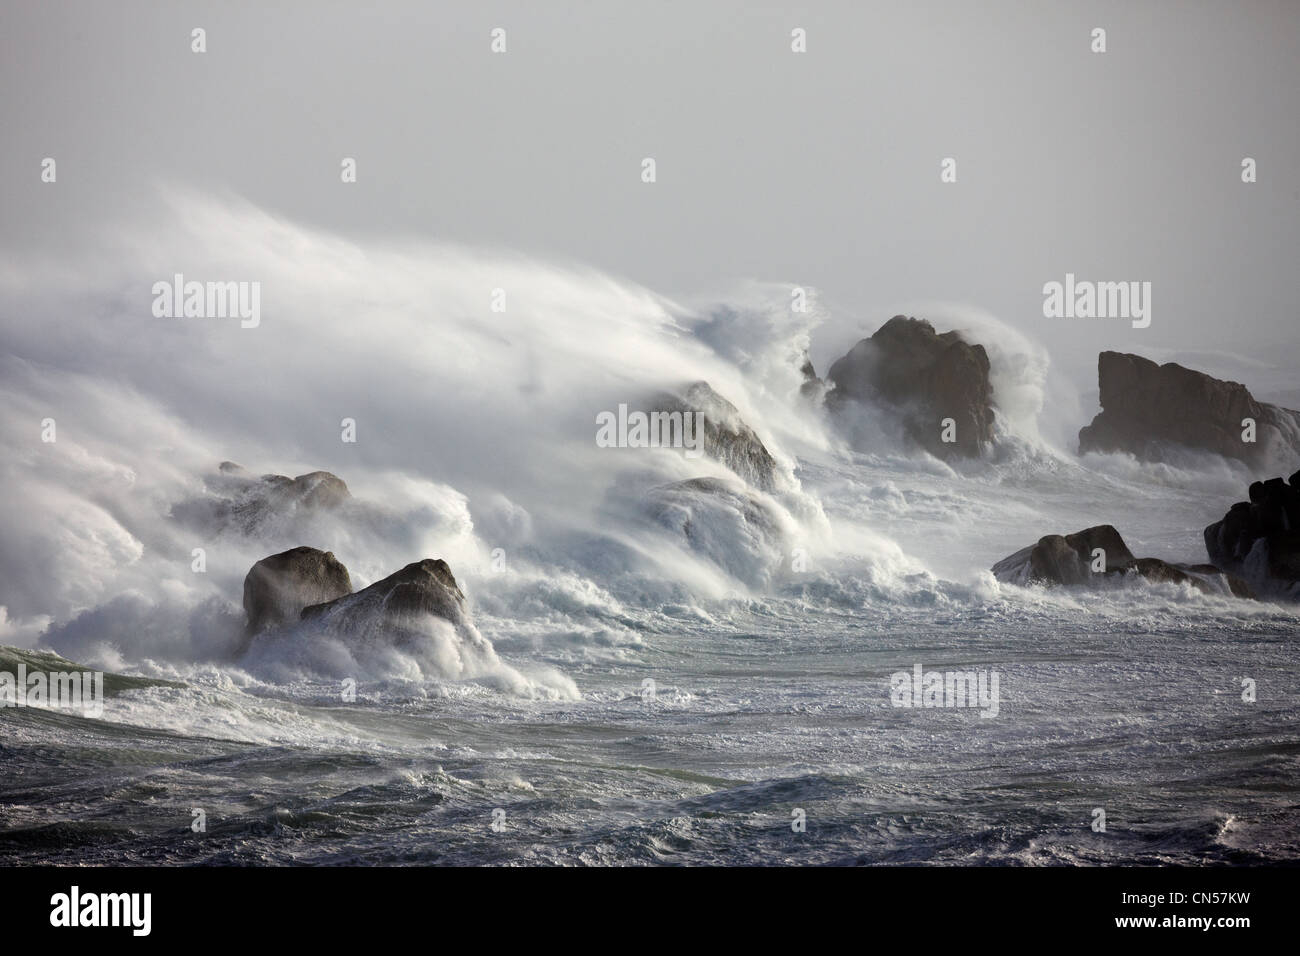 La France, Finistère, Porspoder, vagues sur le rivage au cours d'une grande rafale de vent Banque D'Images